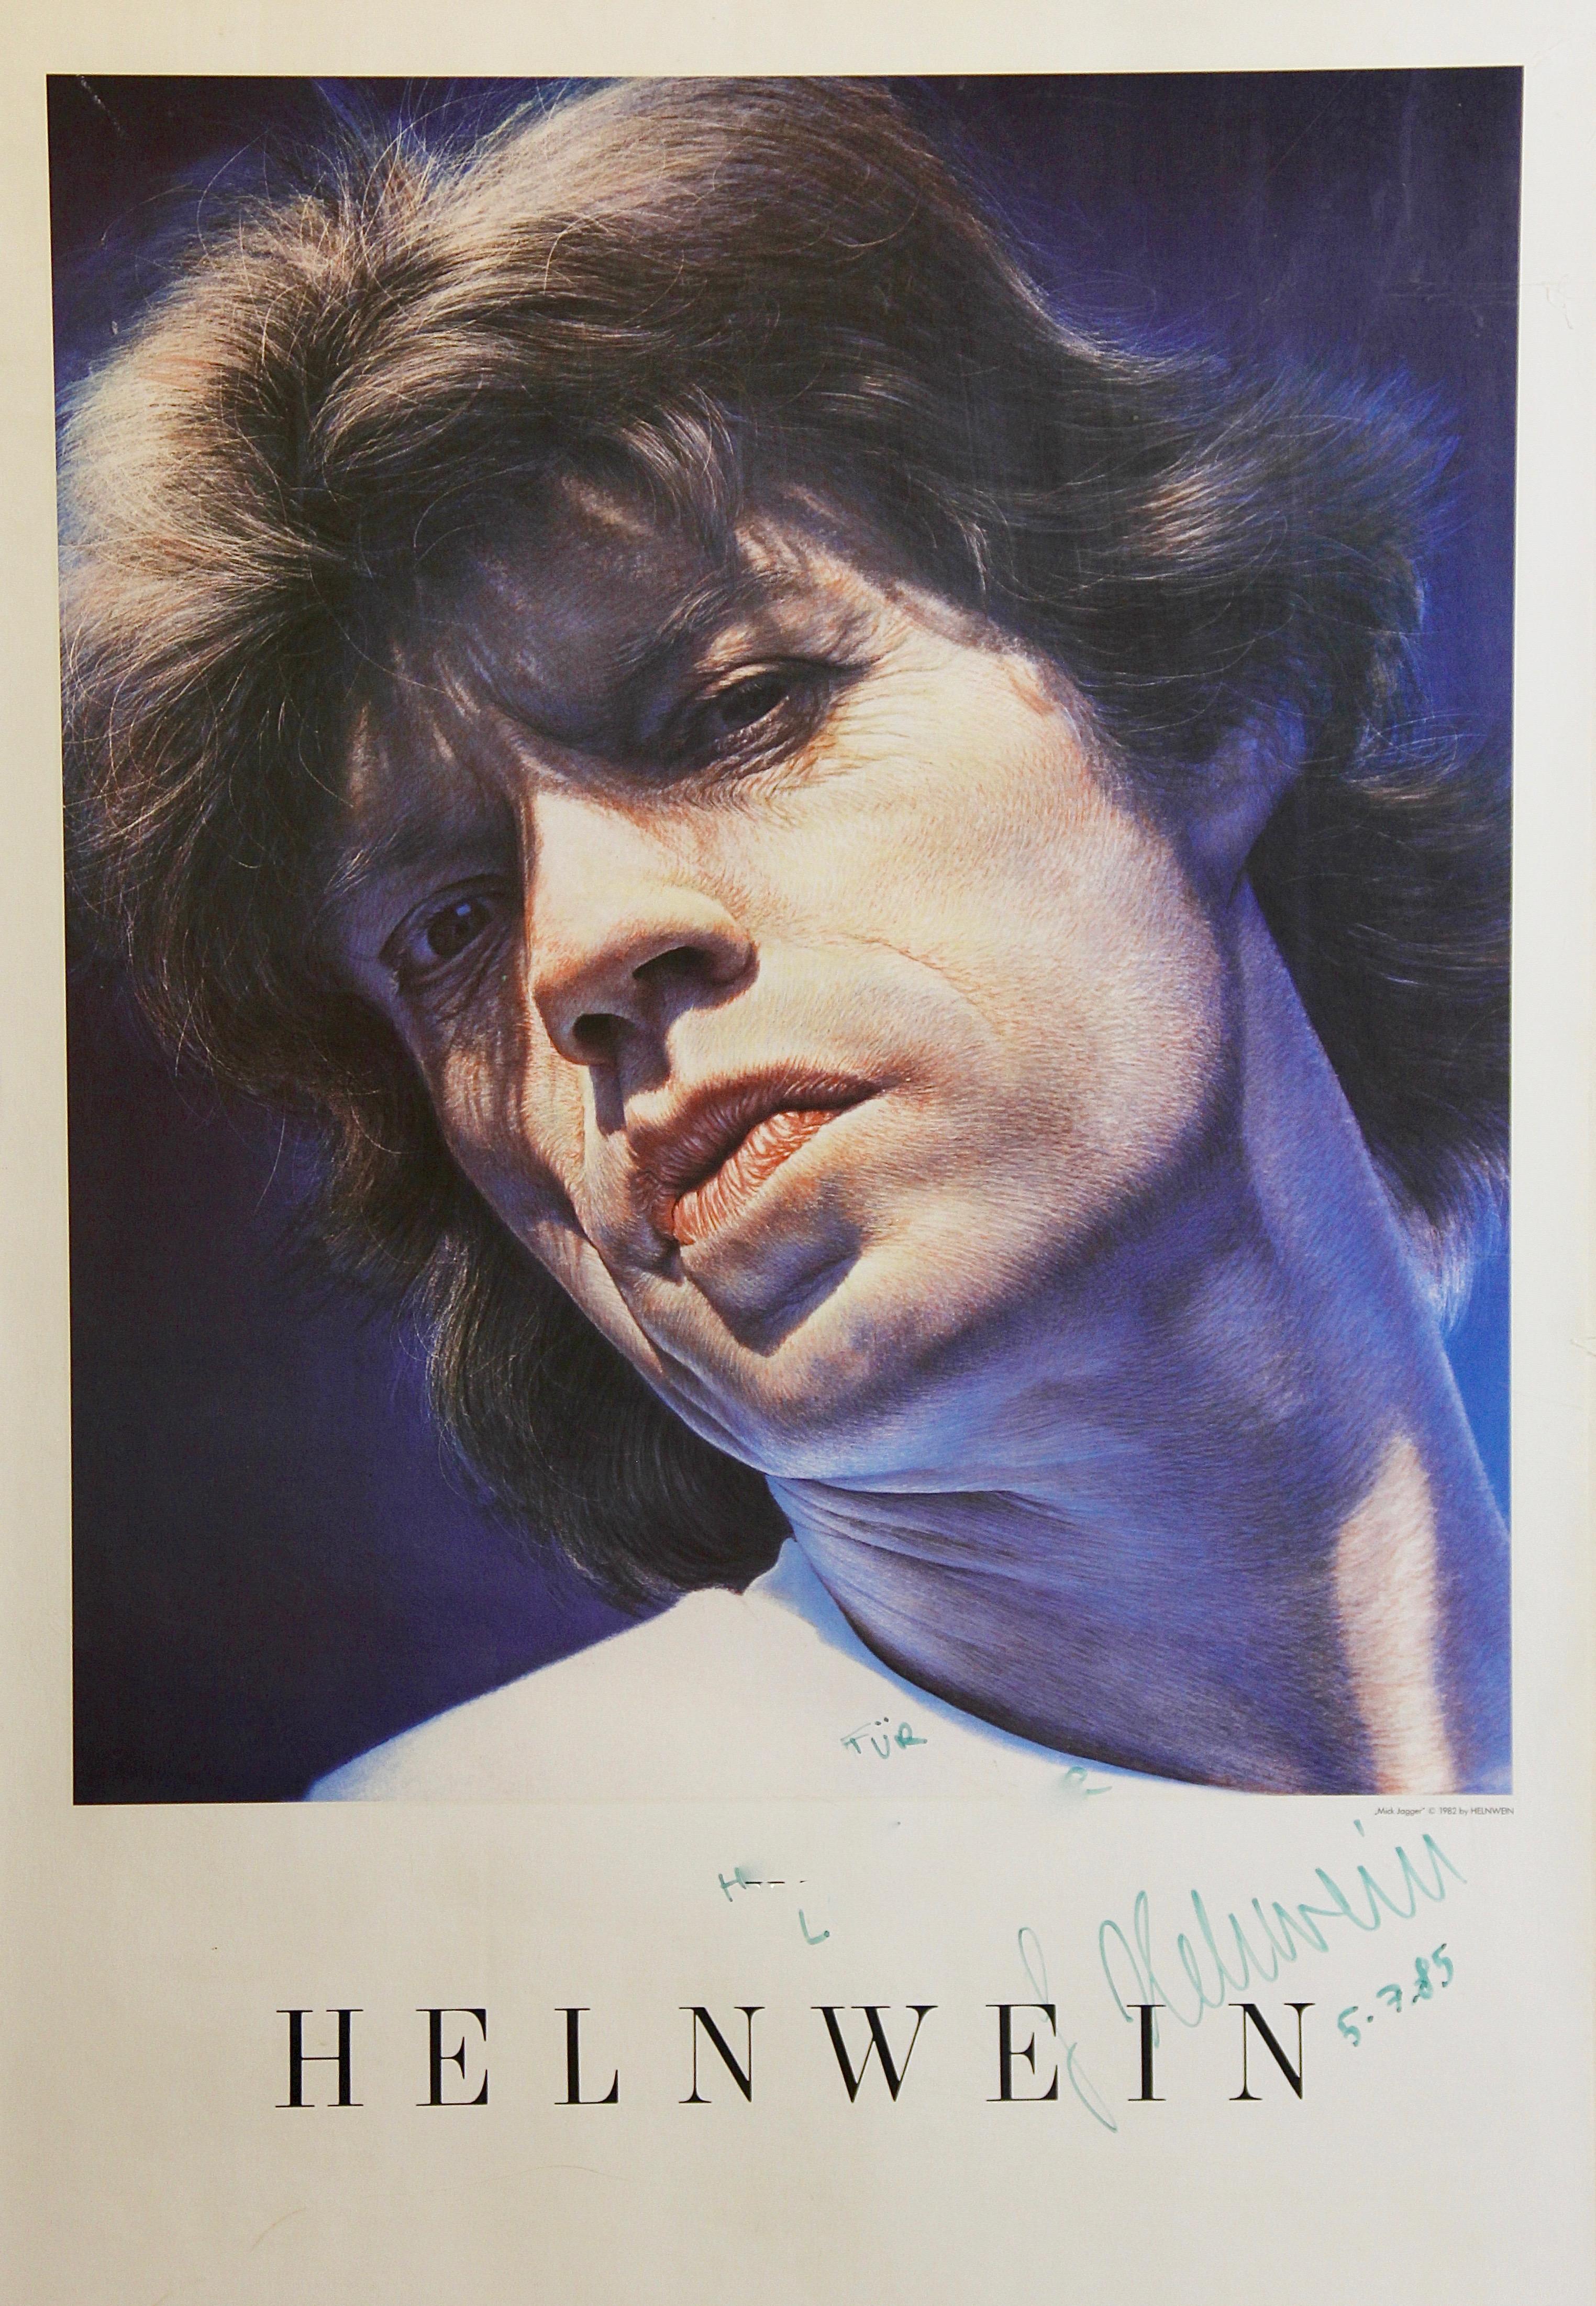 Gottfried Helnwein Mick Jagger Poster original signiert mit persönlicher Widmung:

"Für xxxxx xxxxxx (Vor- und Nachname digital retuschiert)"

Die Abmessungen sind Gesamtabmessungen (mit Rahmen).
